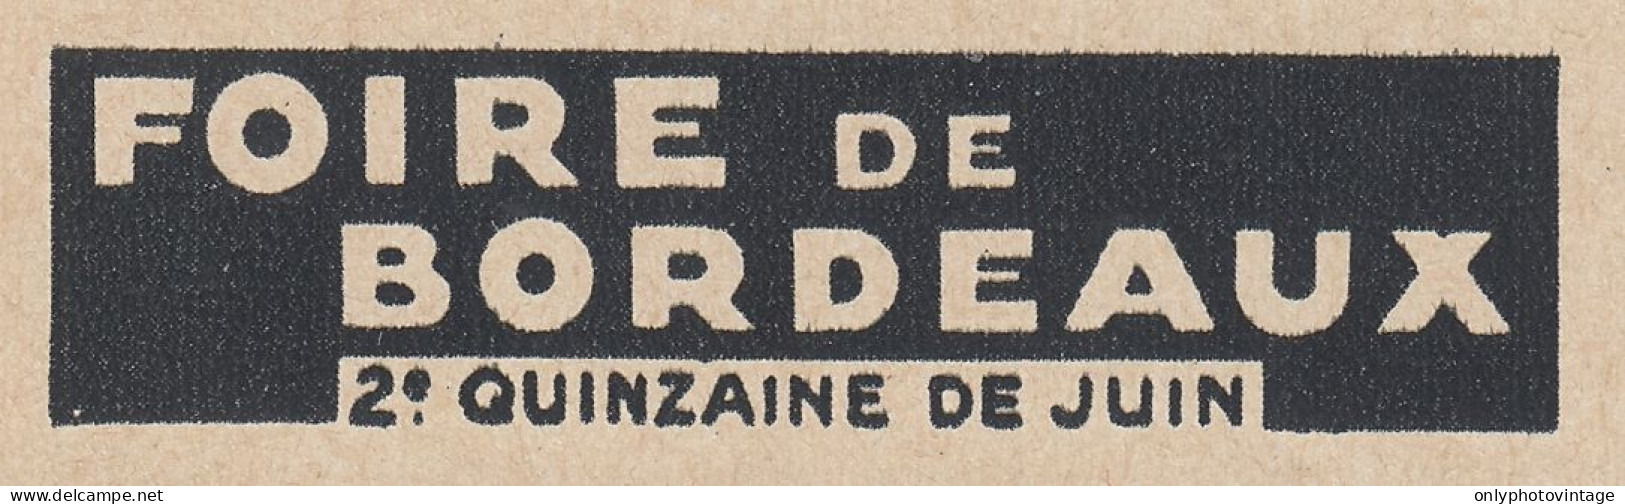 Foire De Bordeaux - 1936 Vintage Advertising - Pubblicit� Epoca - Werbung